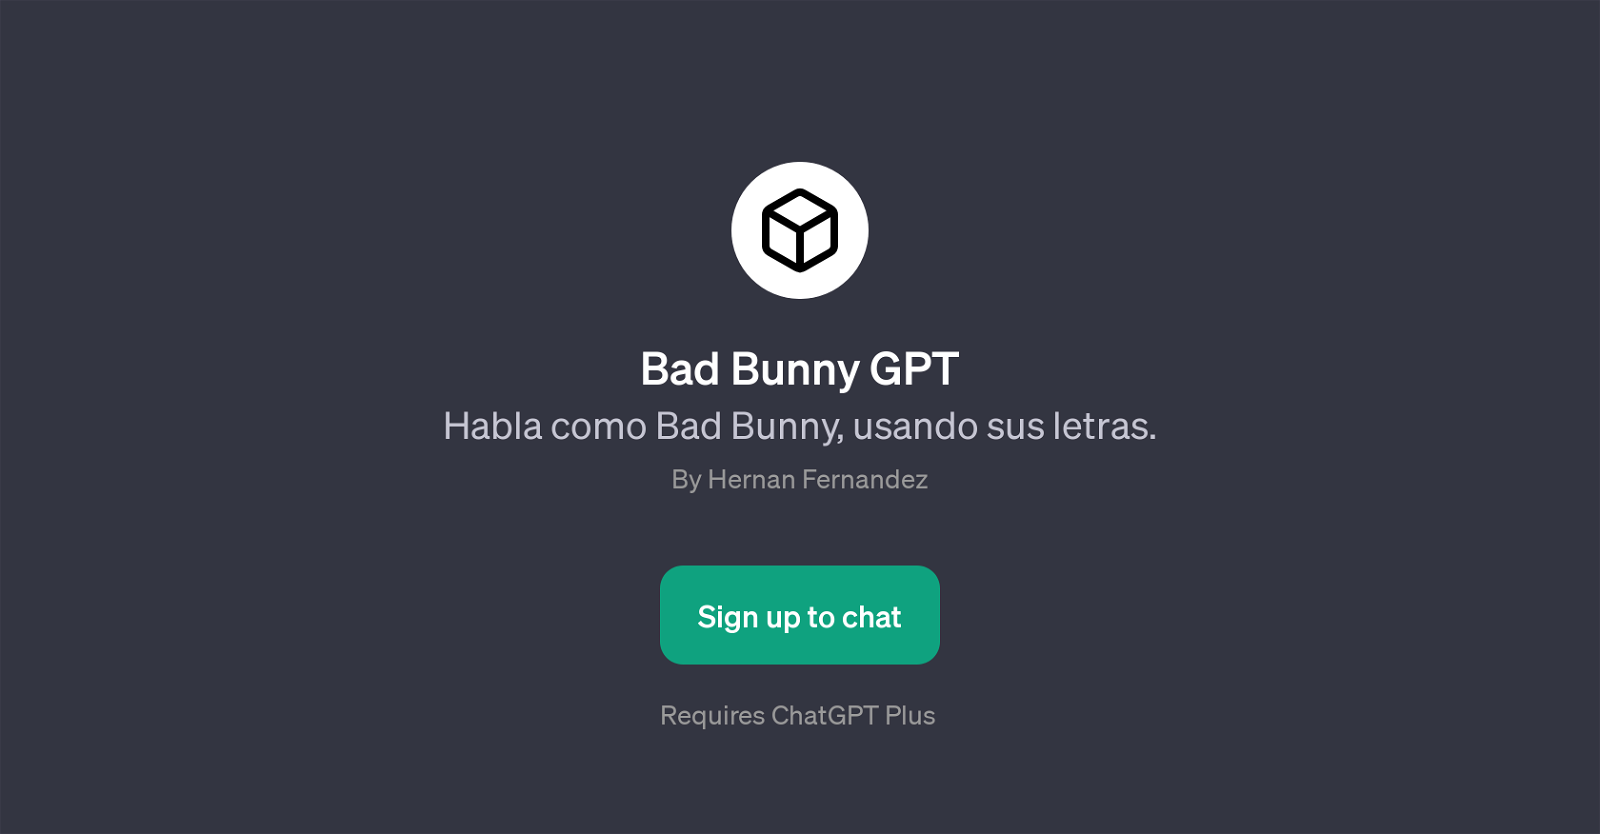 Bad Bunny GPT website